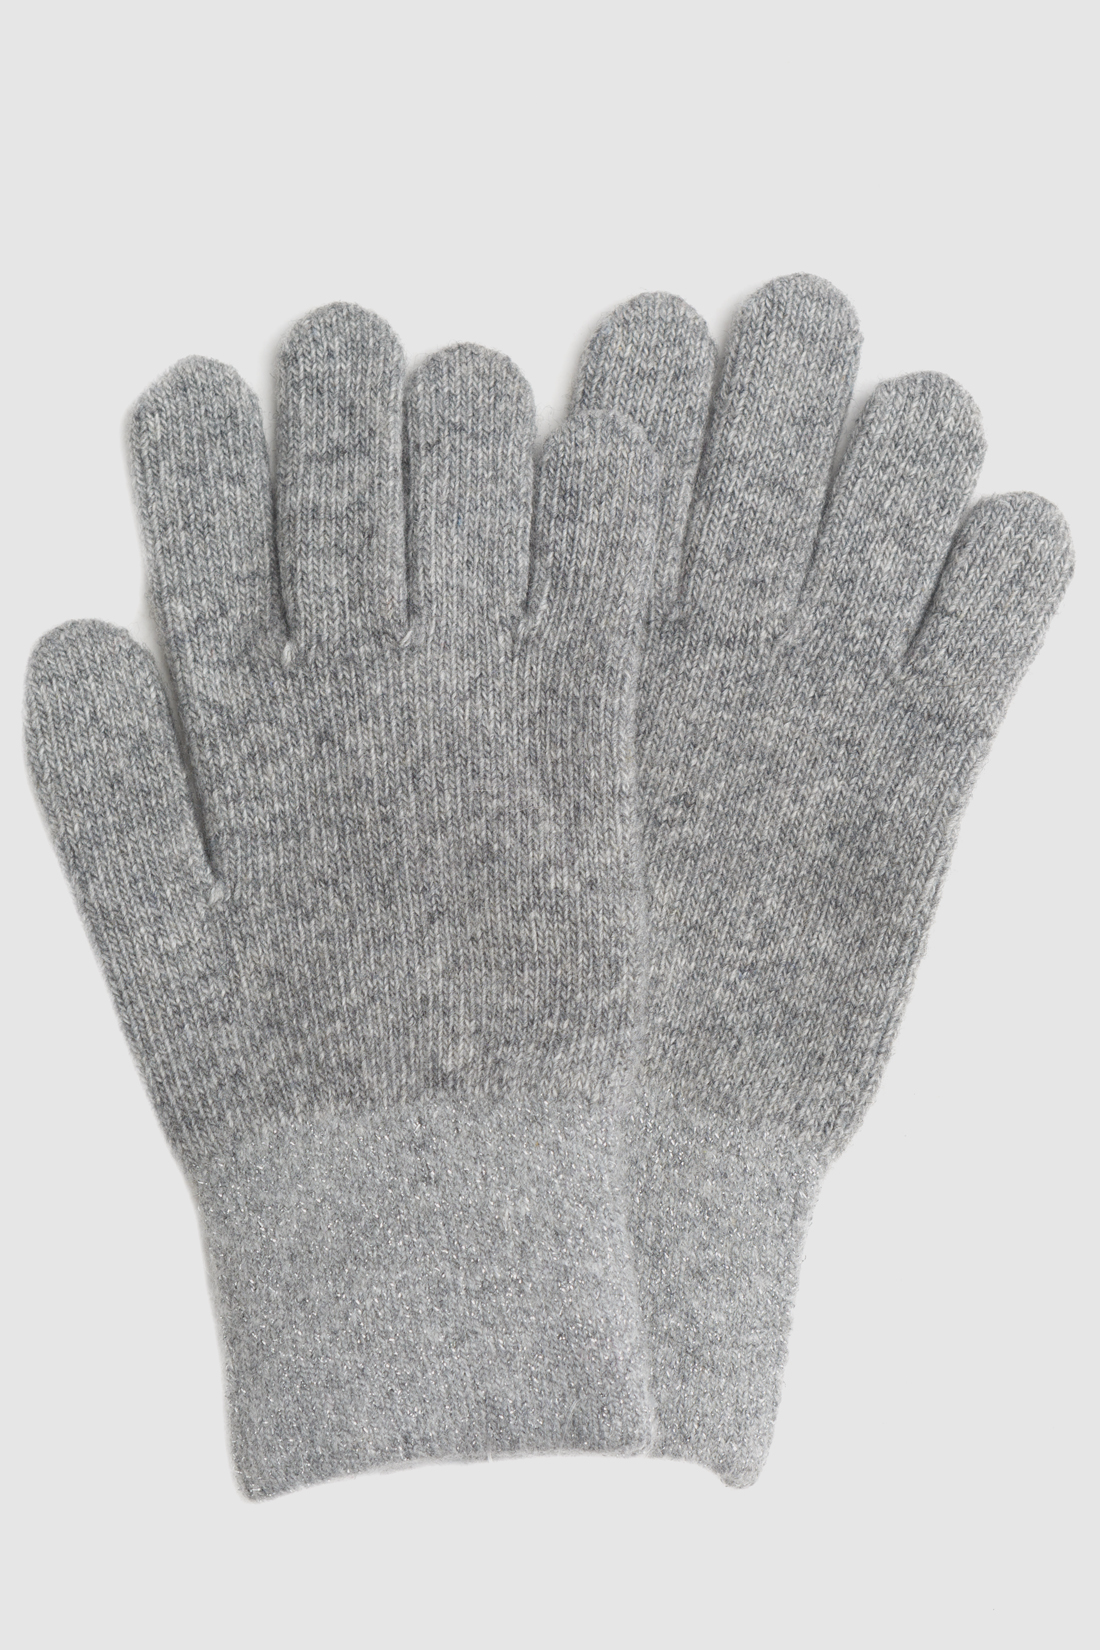 Перчатки (арт. baon B360515), размер Без/раз, цвет zircon melange#серый